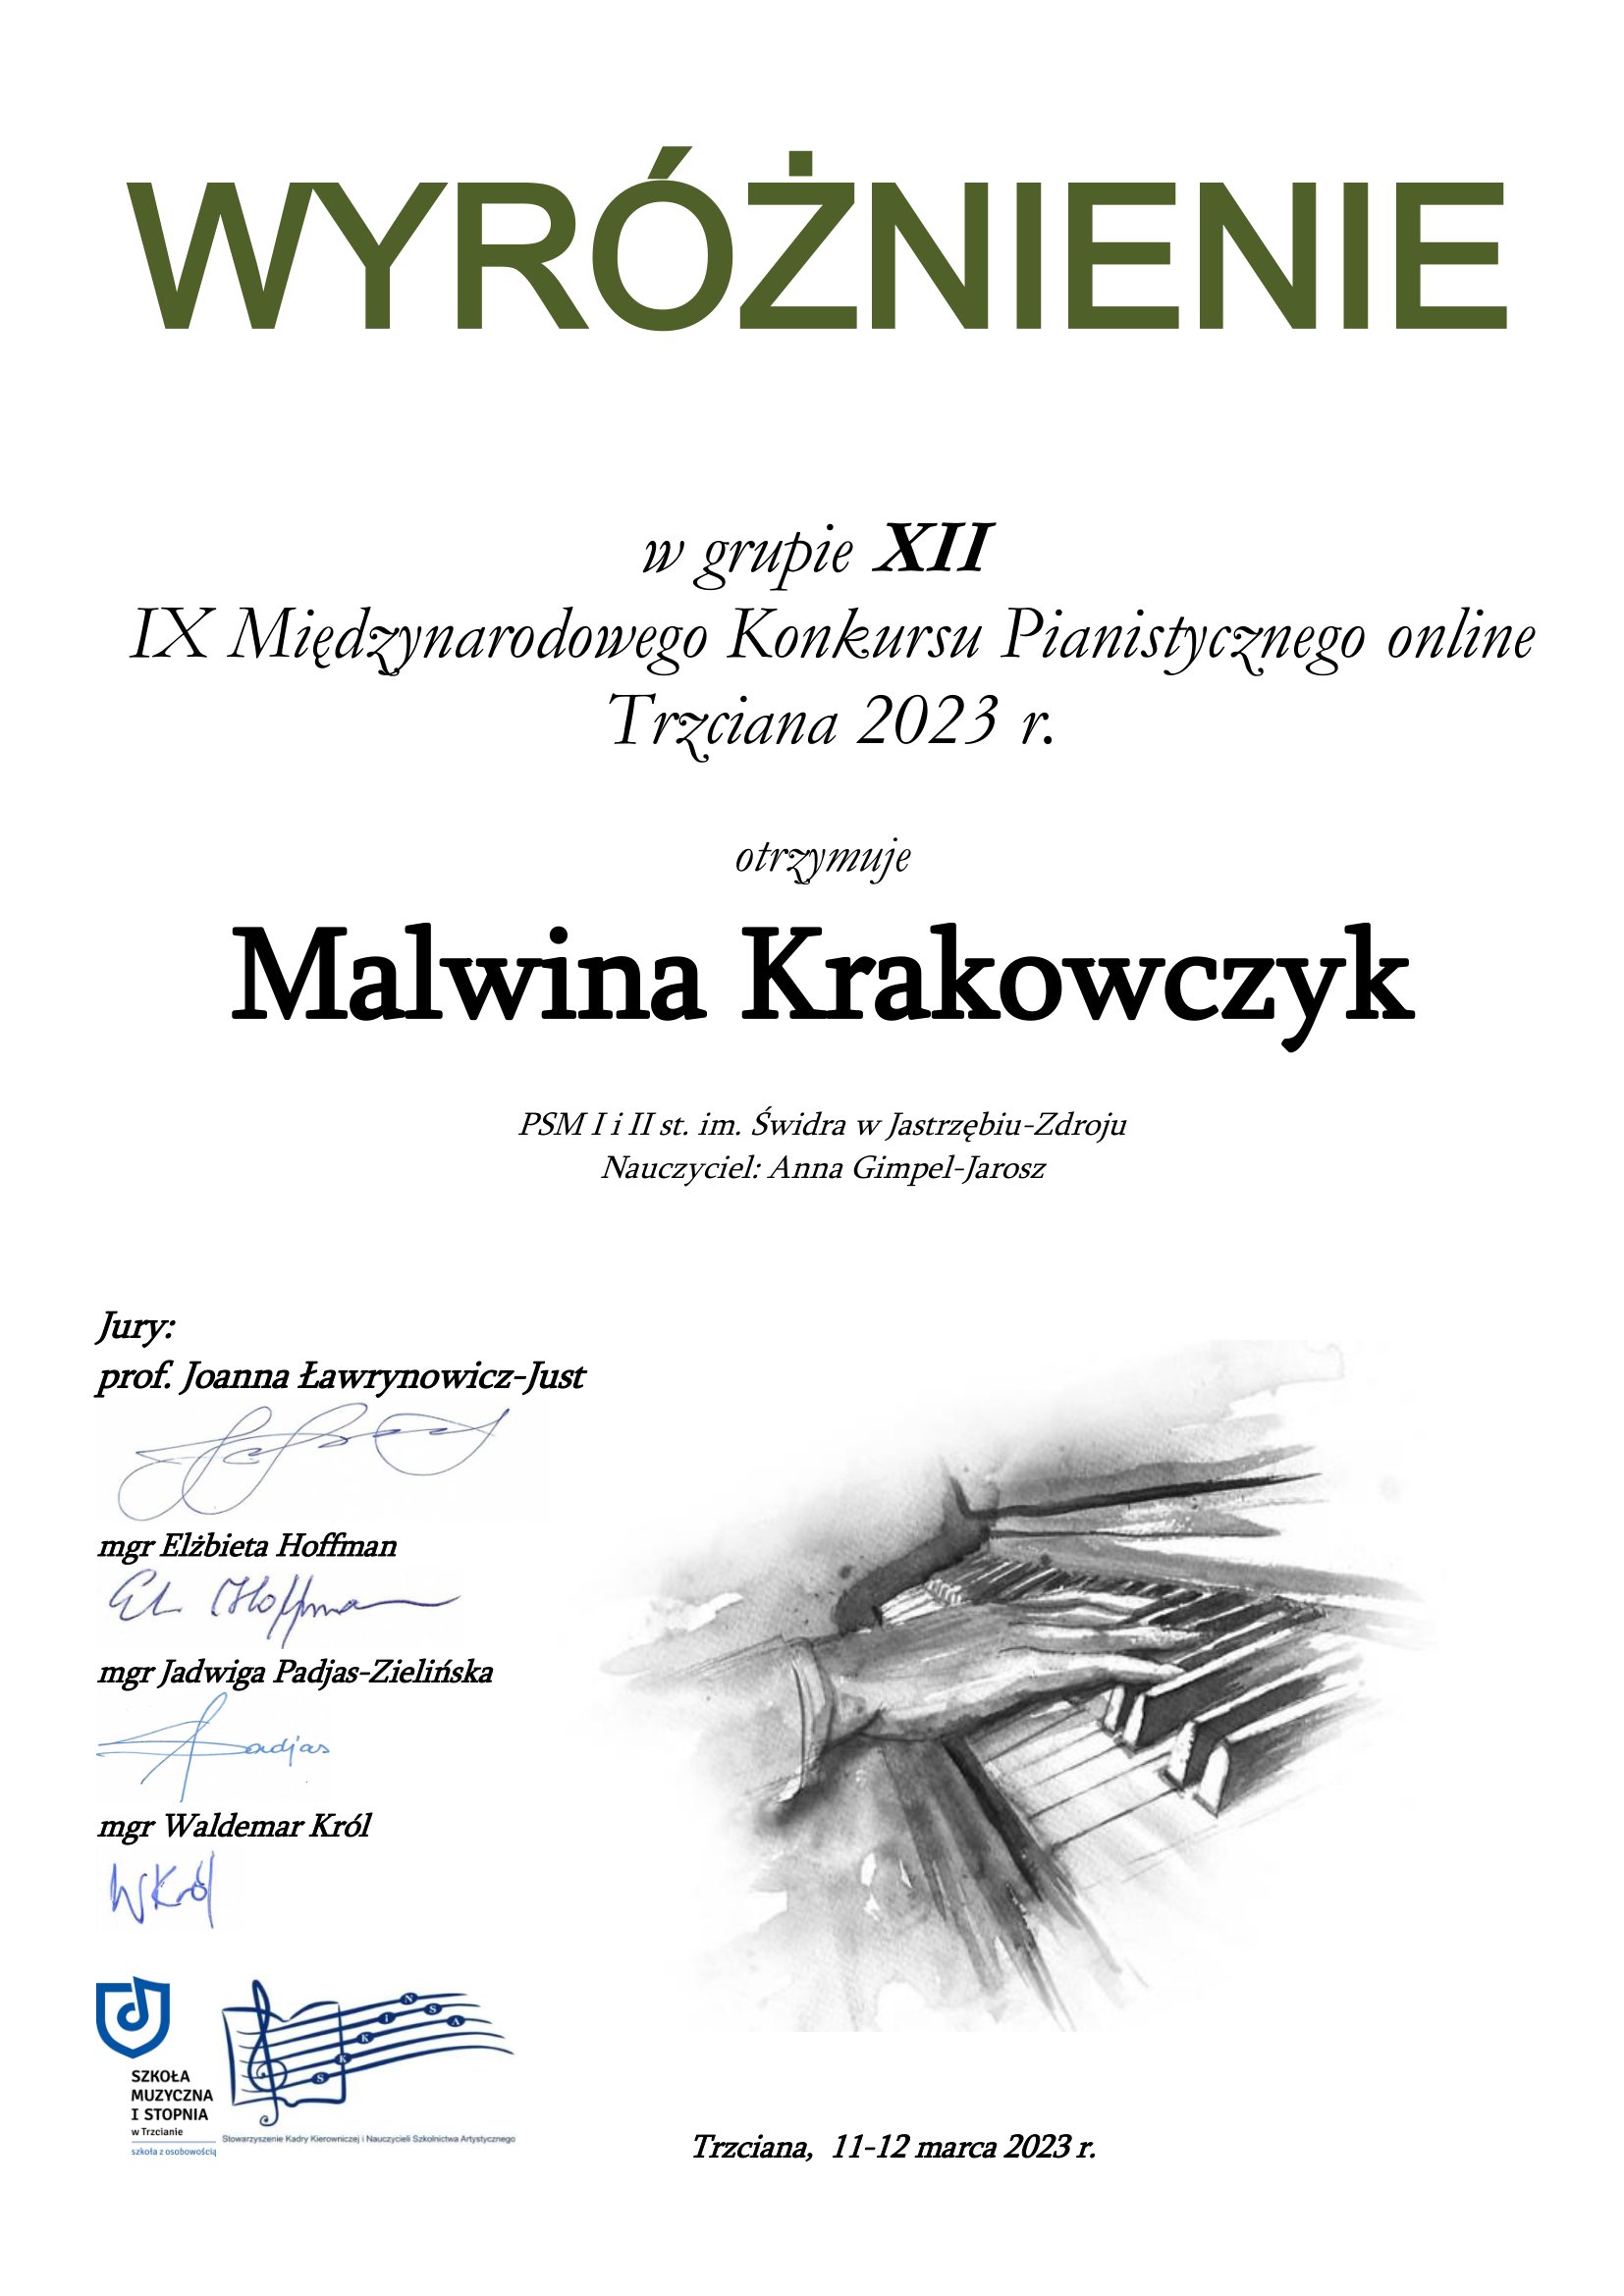 Wyróżnienie w grupie XII, nauczyciel Anna Gimpel-Jarosz, po lewej stronie nazwiska i podpisy jury, na dole logo Szkoły Muzycznej I stopnia w Trzcianie, Trzciana, 11 -12 marca 2023 r.